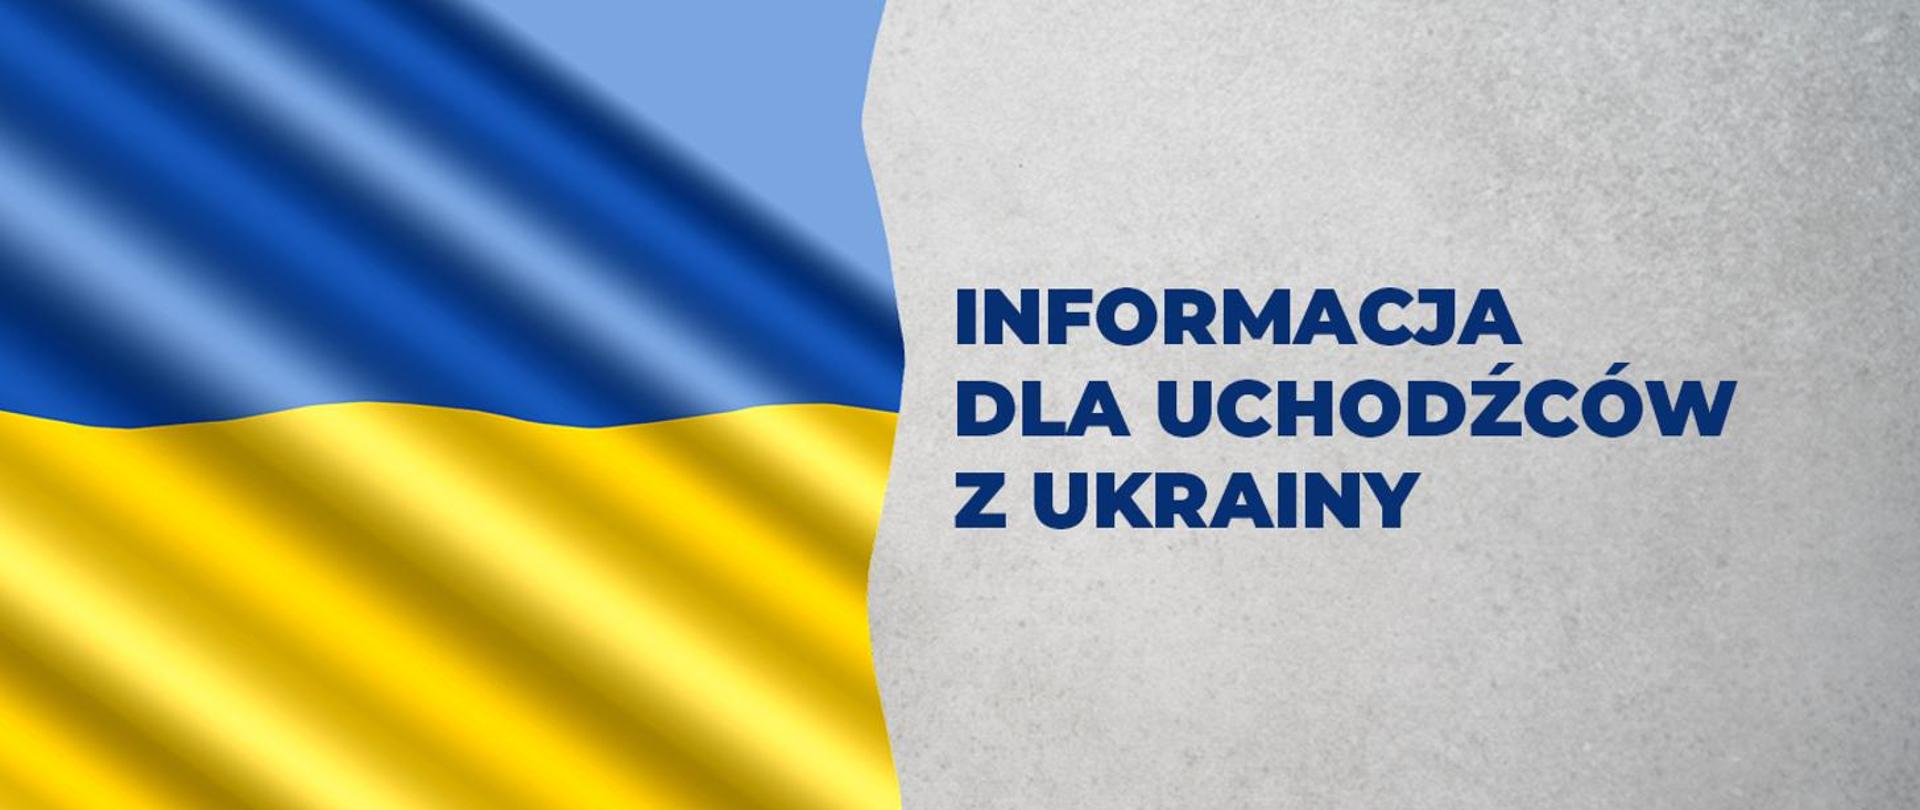 napis: Informacja dla uchodźców z Ukrainy